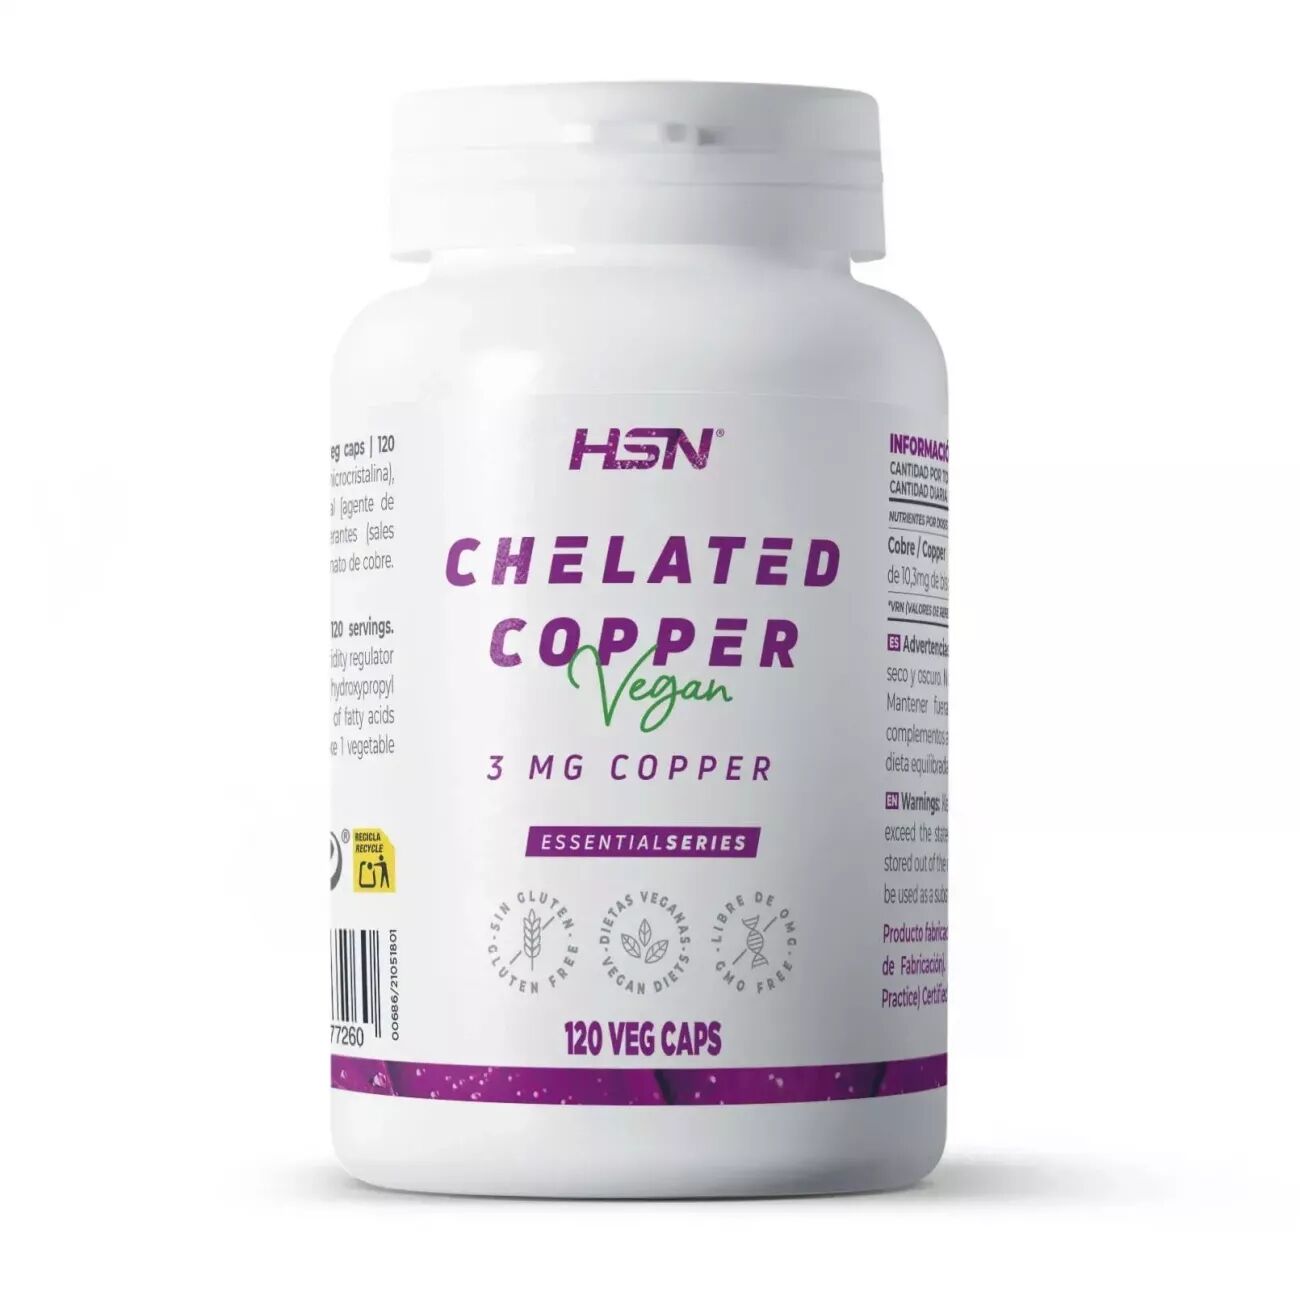 HSN Bisglicinato de cobre (3mg cobre) - 120 veg caps